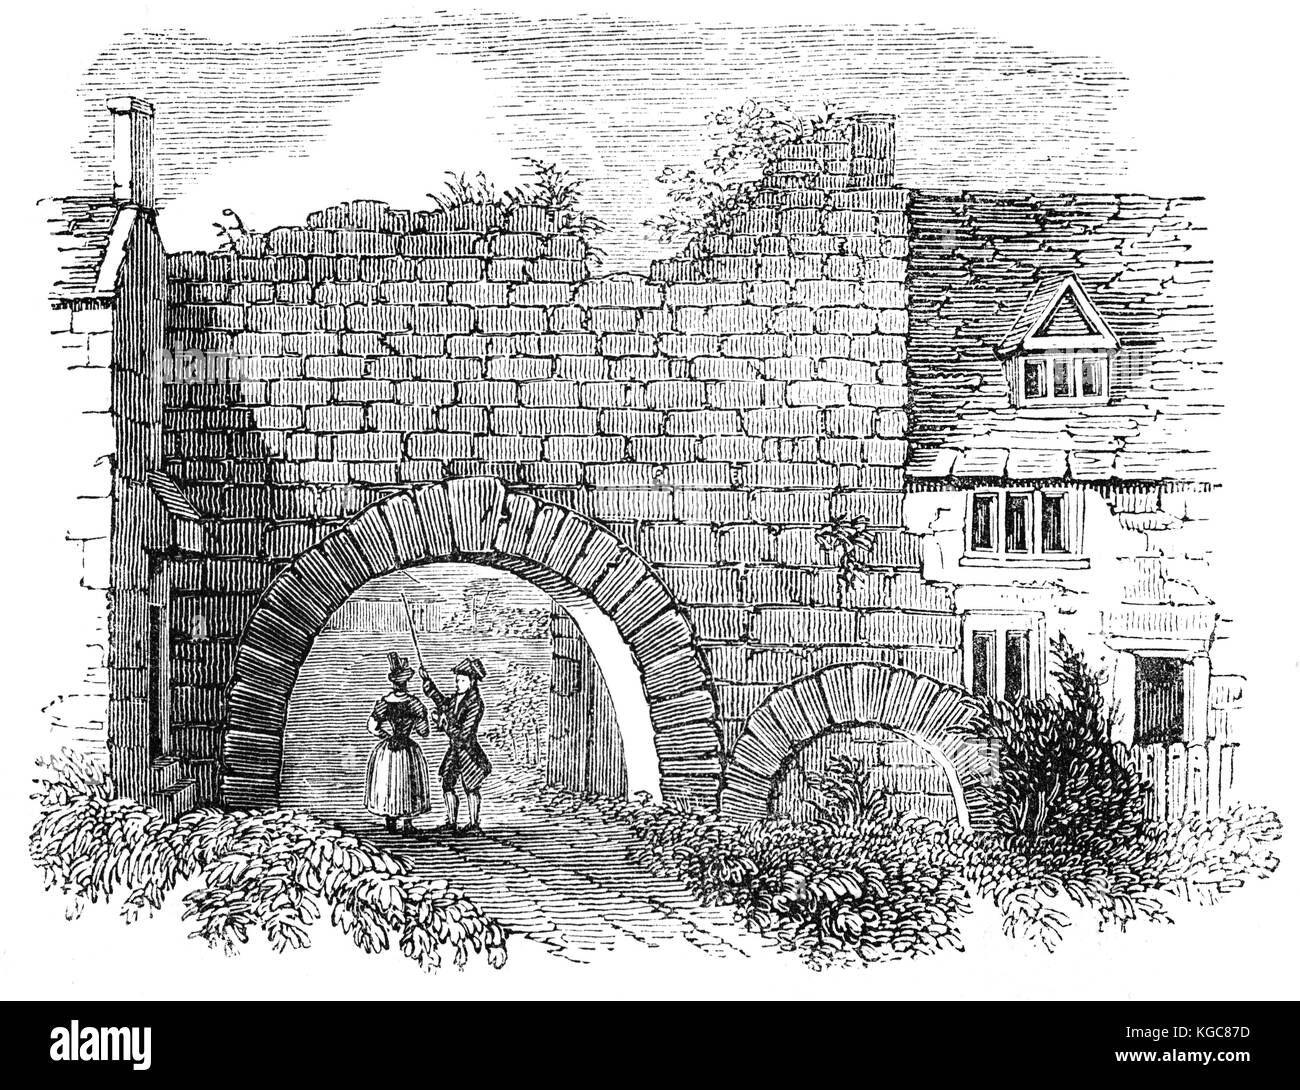 Newport Arch es el nombre dado a los restos de una 3ª puerta romana del siglo en la ciudad de Lincoln, Lincolnshire. El arco fue remodelado y ampliado cuando la ciudad, entonces Lindum Colonia una ciudad romana, se convirtió en la capital de la provincia, Flavia Caesariensis en el 4to siglo. Inglaterra. Foto de stock